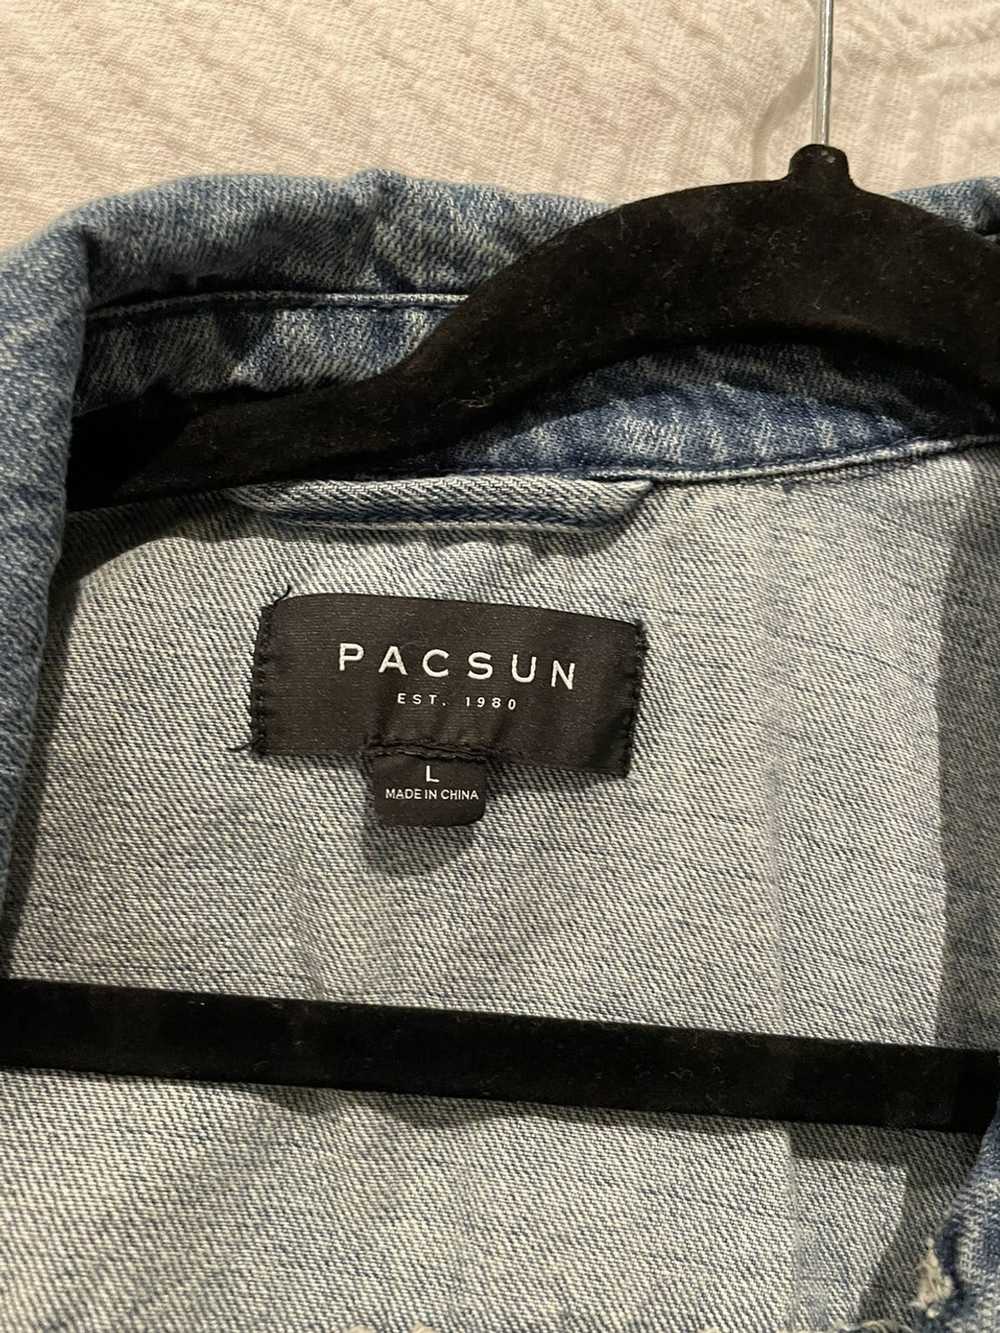 Pacsun Pacsun jean jacket - image 3